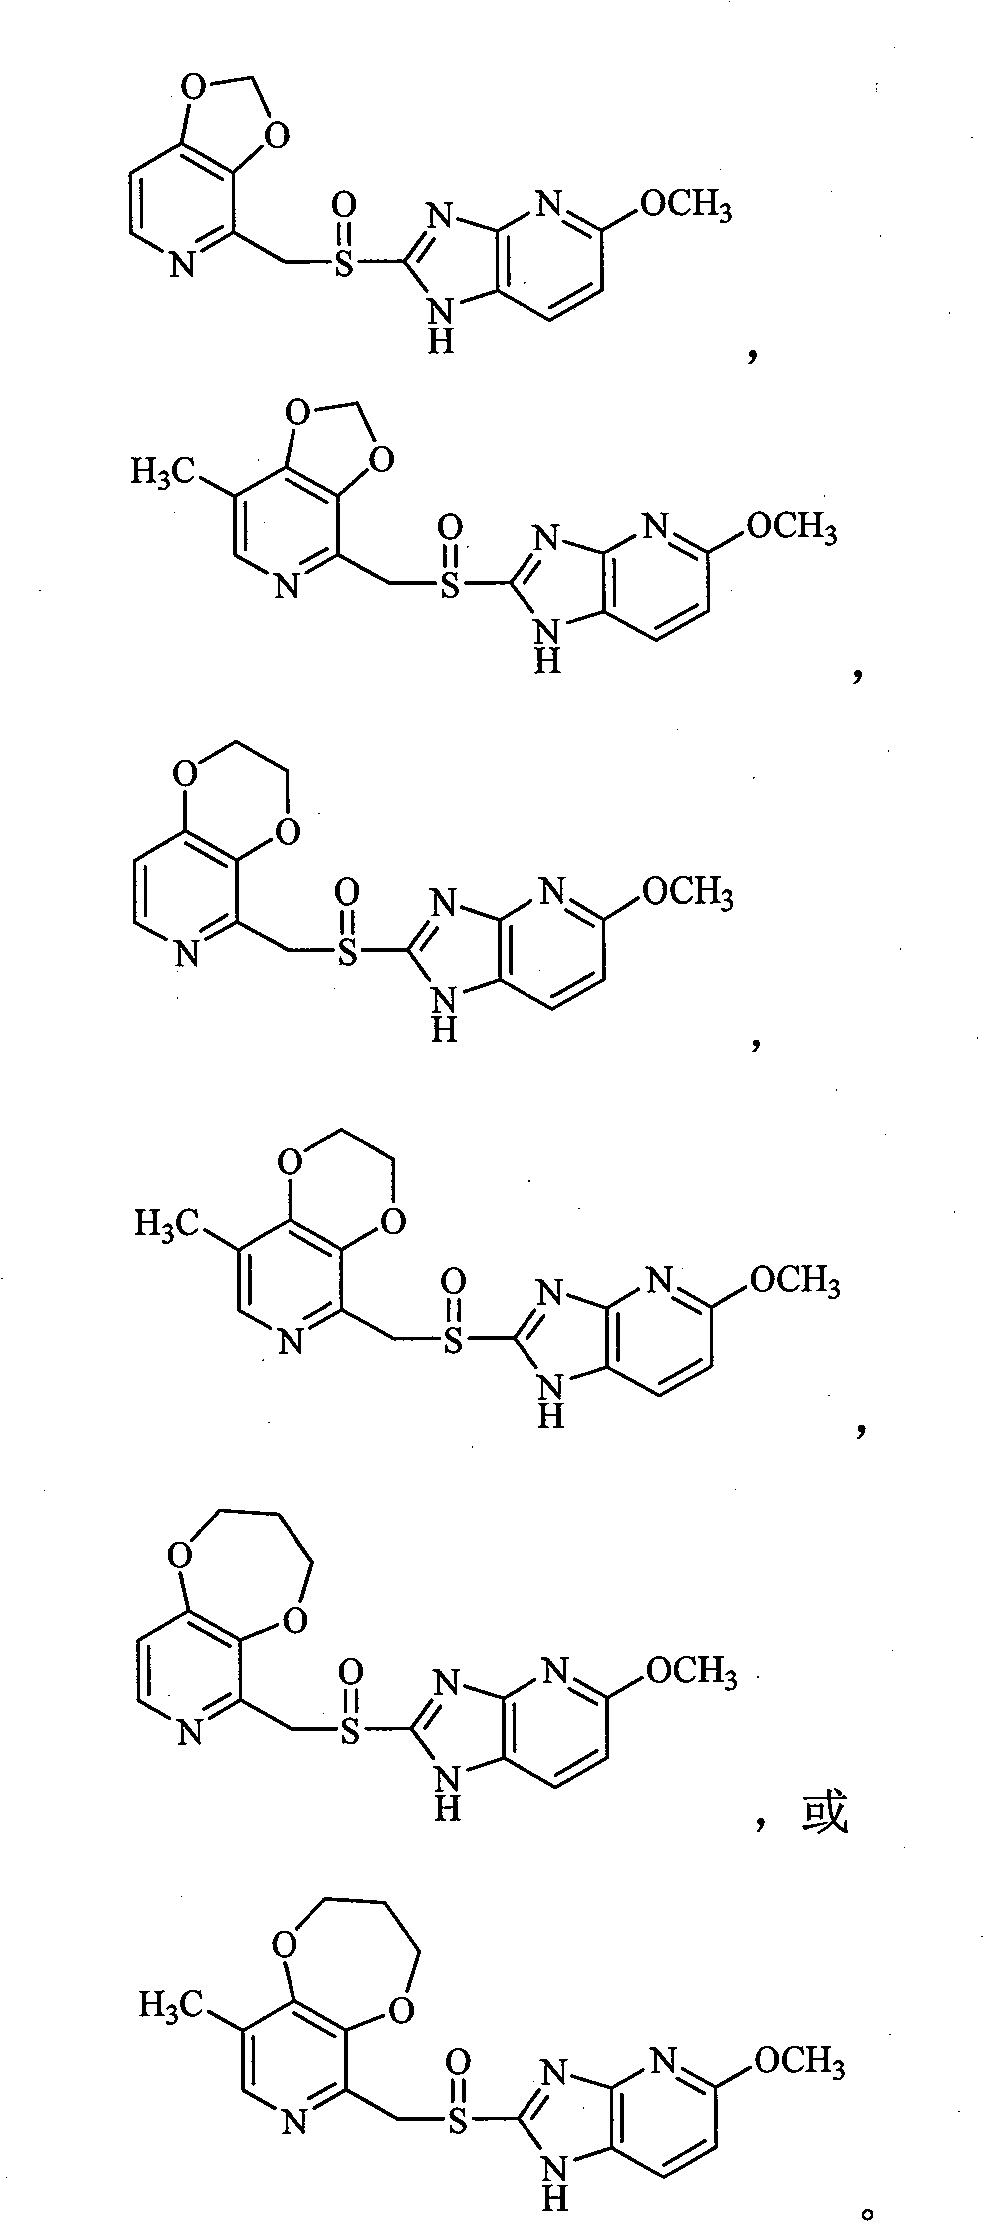 Imidazopyridine derivative containing dioxane-pyridine